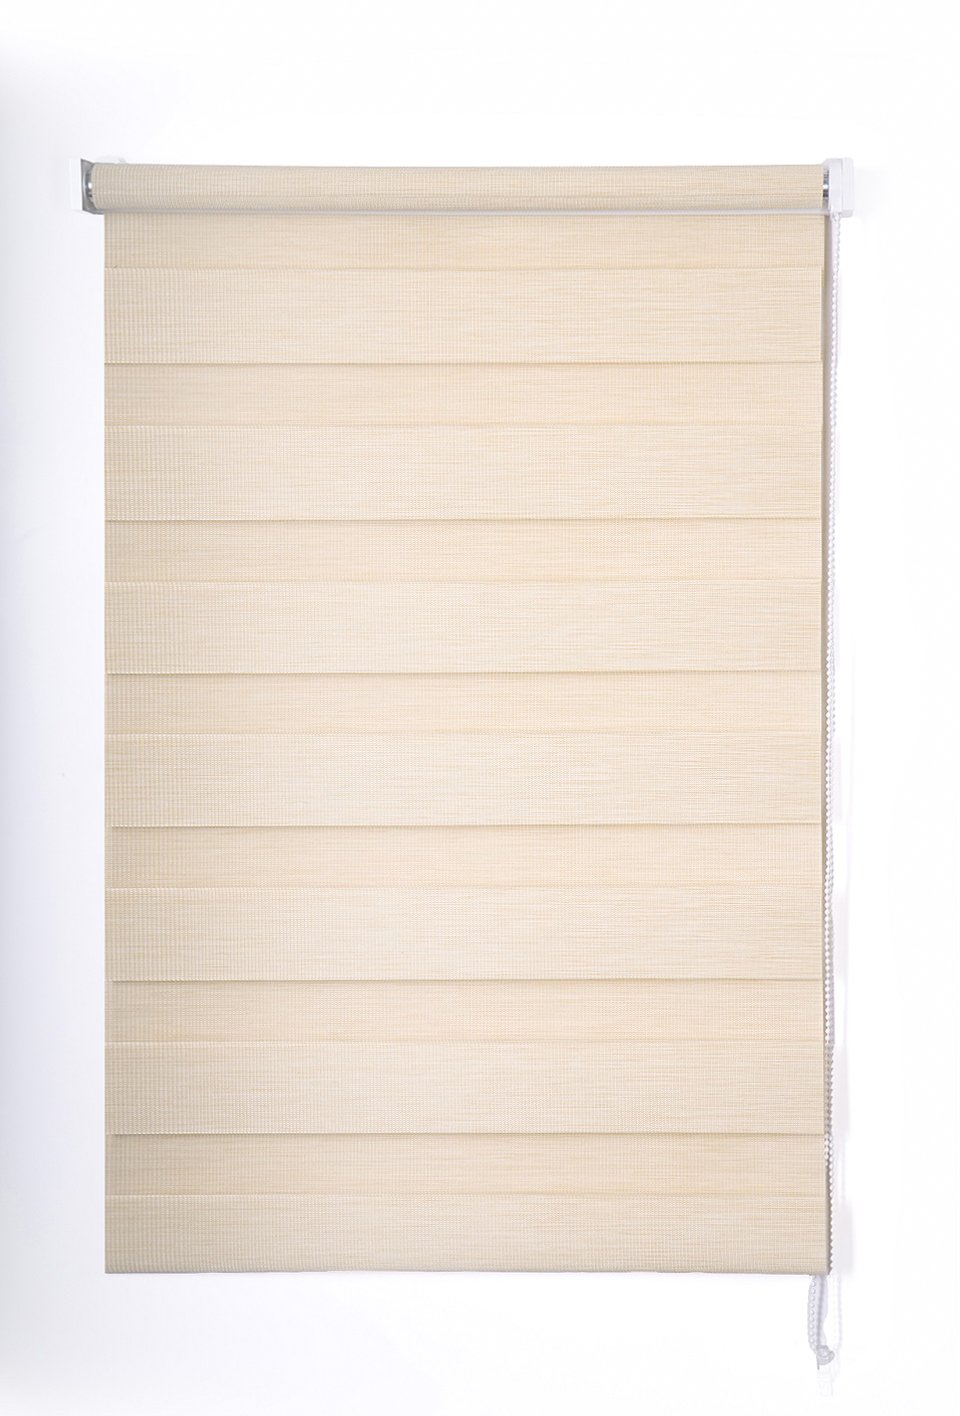 Klasikinė ritininė užuolaida VERONA D&N, smėlio sp., 60 x 170 cm, 100 % poliesteris